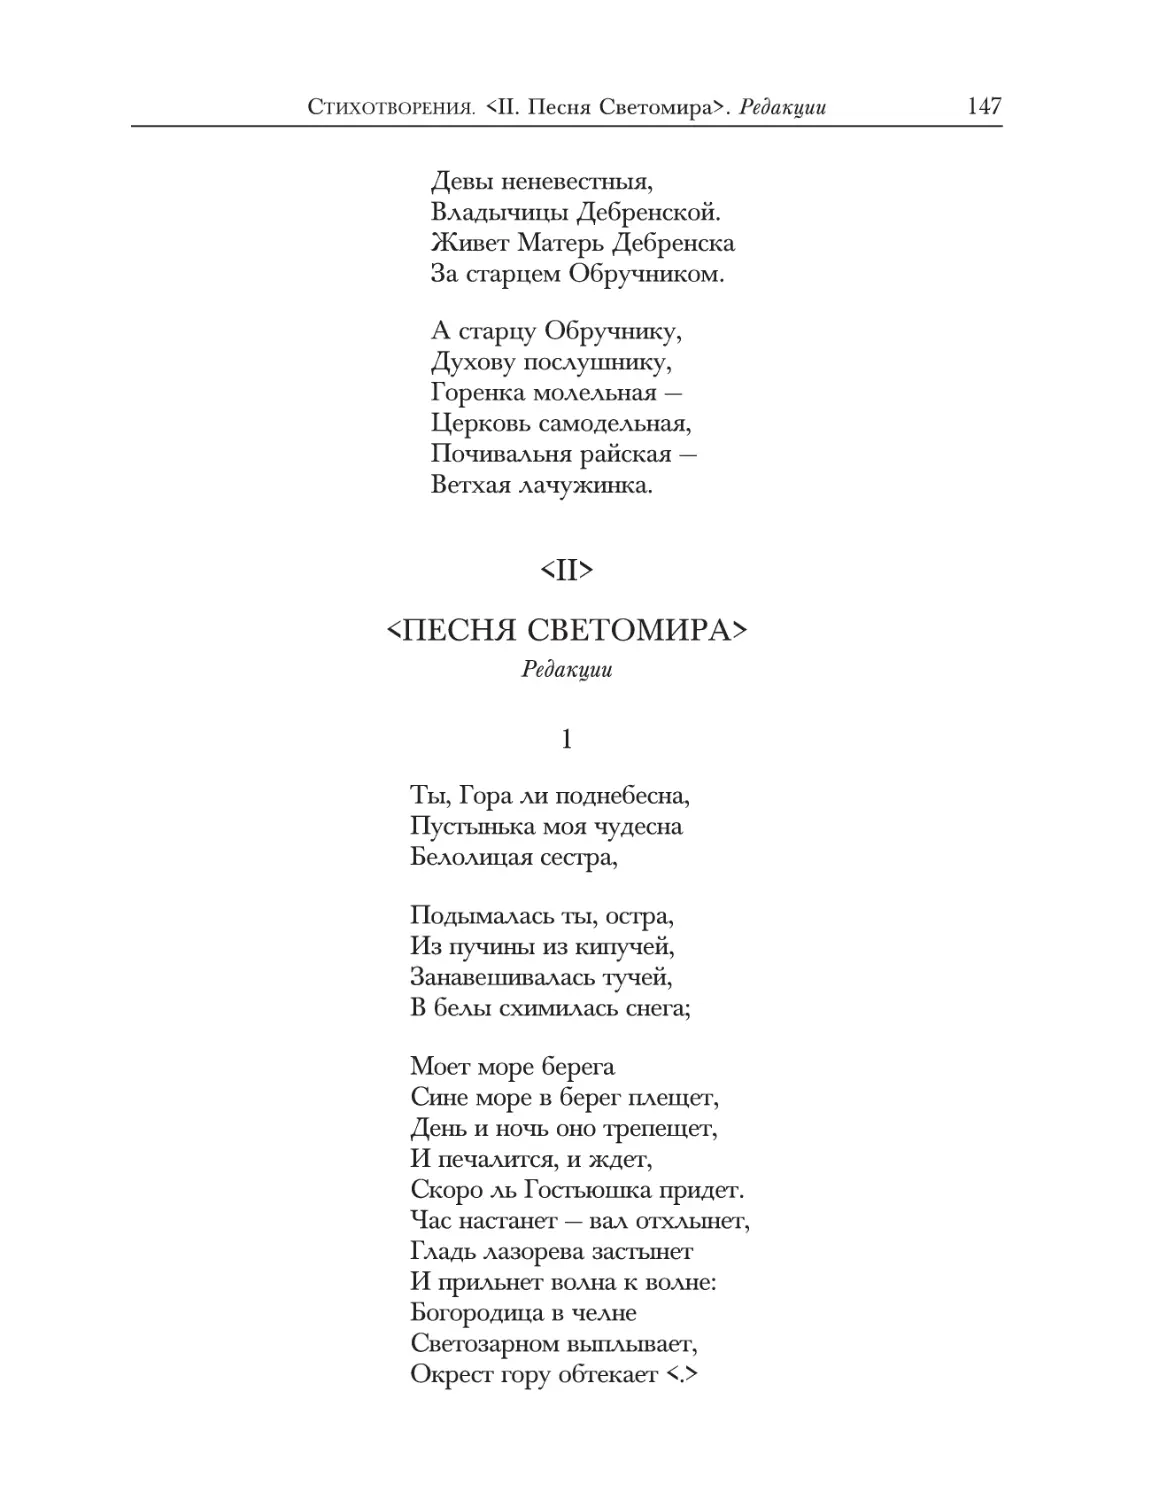 <II.> Песня Светомира>. Редакции